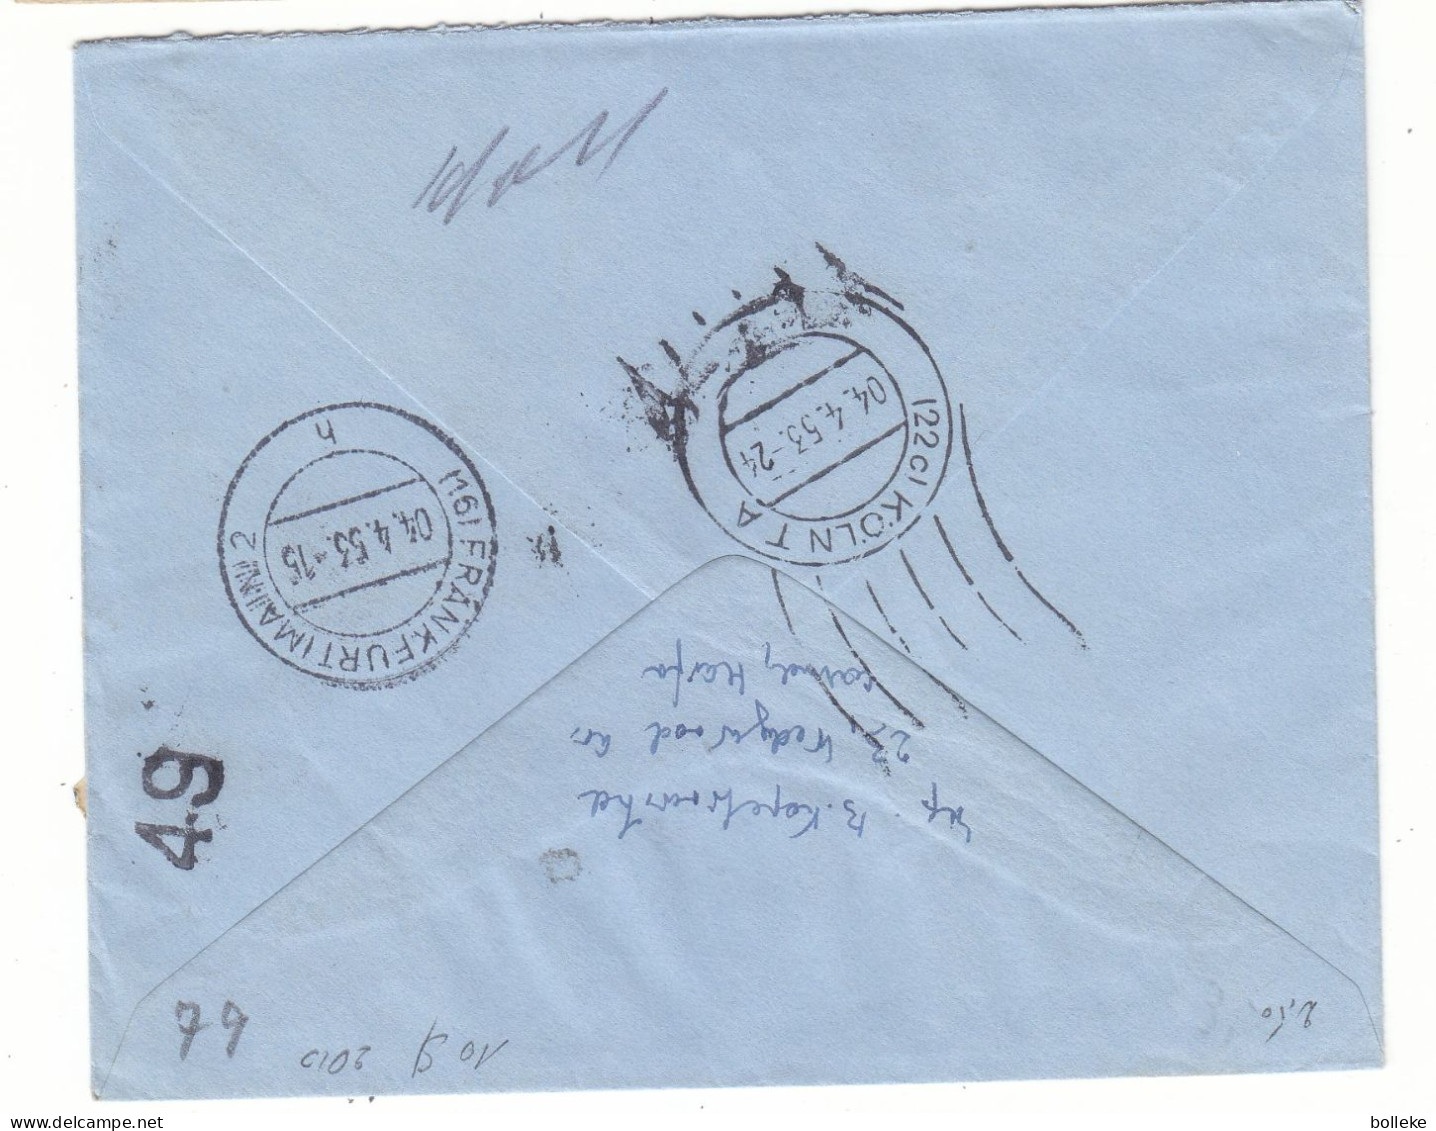 Israël - Lettre Exprès De 1953 - Oblit Haifa - Exp Vers Köln - Cachet De  Frankfurt - Valeur 10 $ En ....2010 - - Lettres & Documents